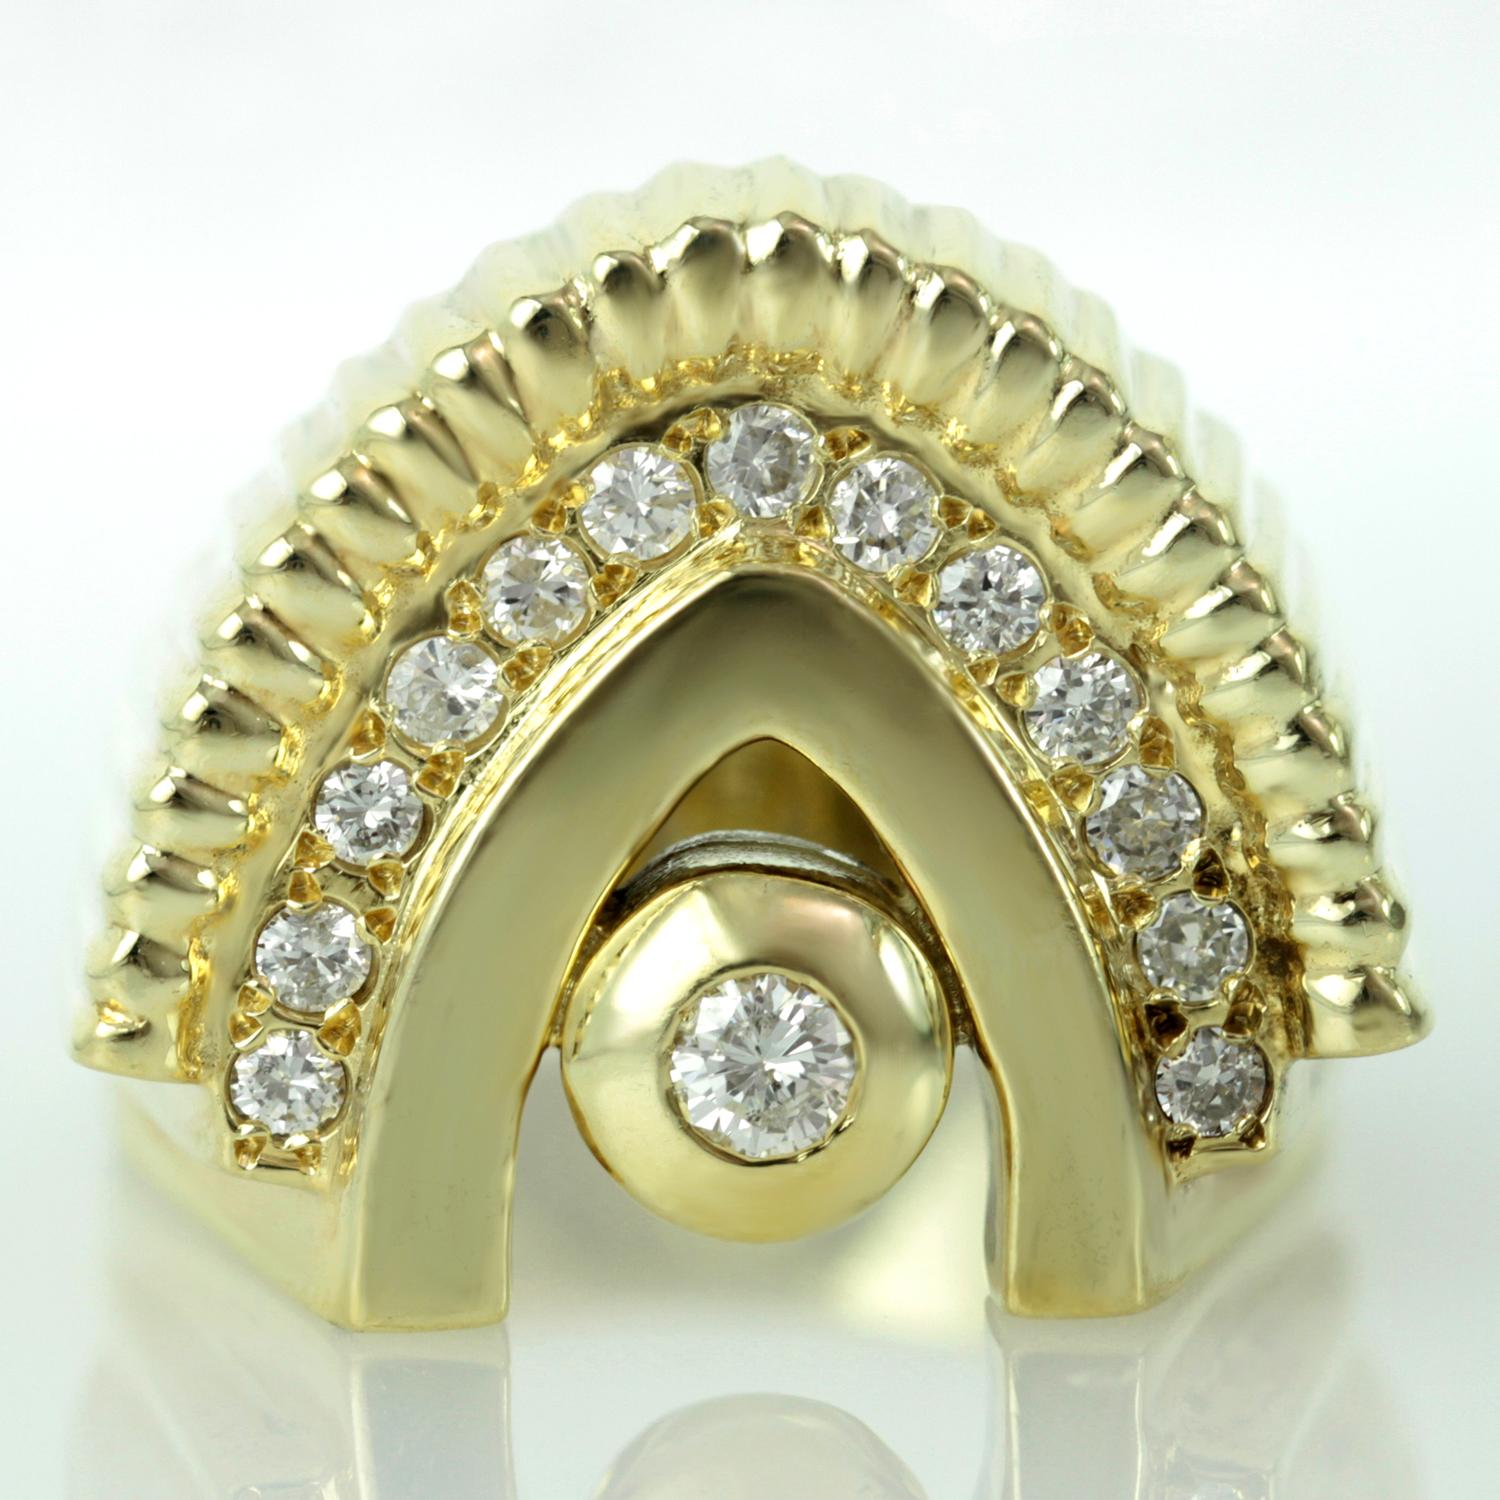 Cette bague unisexe est fabriquée en or jaune 14k et présente un diamant solitaire serti en lunette, magnifiquement mis en valeur par un étincelant motif d'arc serti de diamants. Vers 1970. Mesures : 0.largeur de 20 mm. La taille de la bague est de